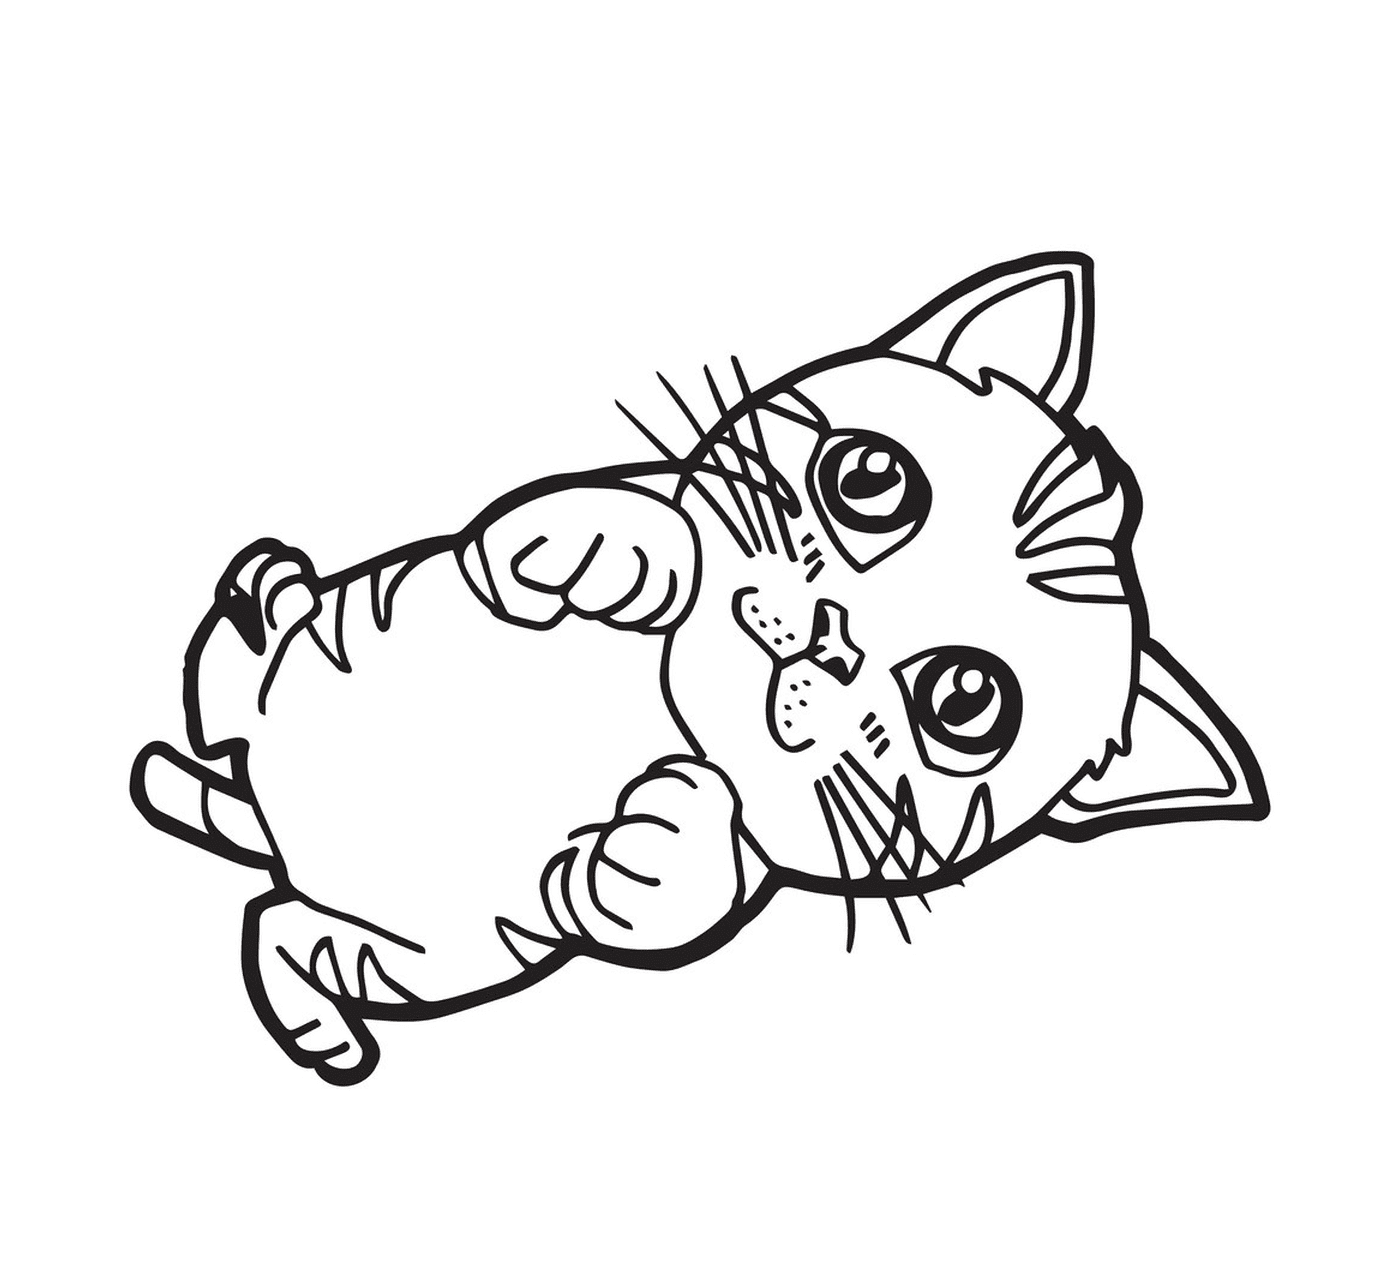  Un gattino dei cartoni animati con gli occhi belli 